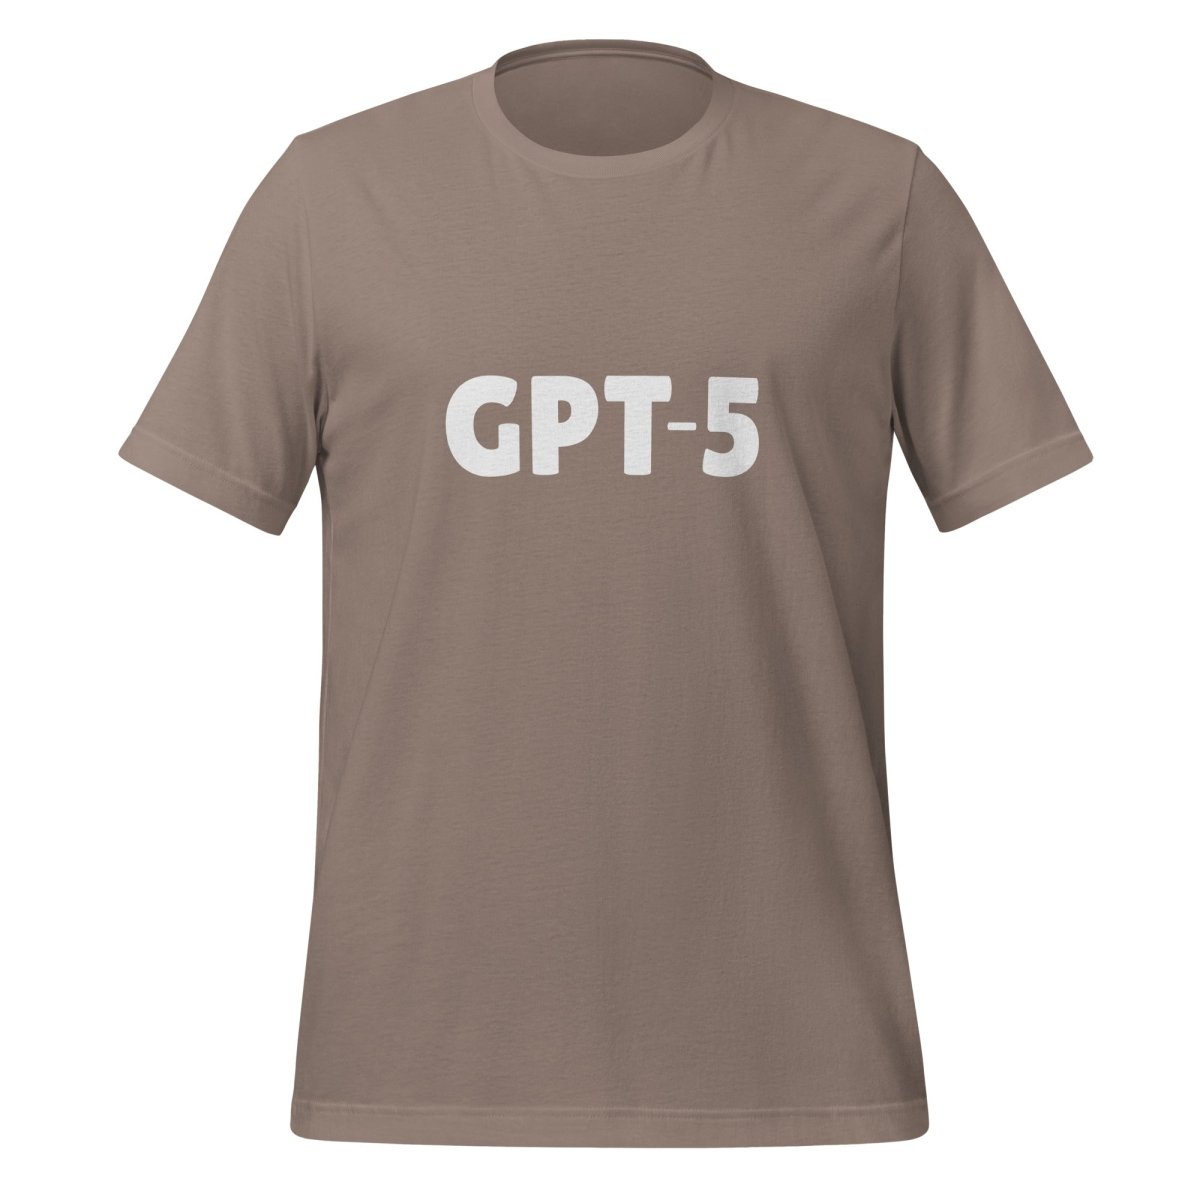 GPT - 5 T - Shirt 2 (unisex) - Pebble - AI Store